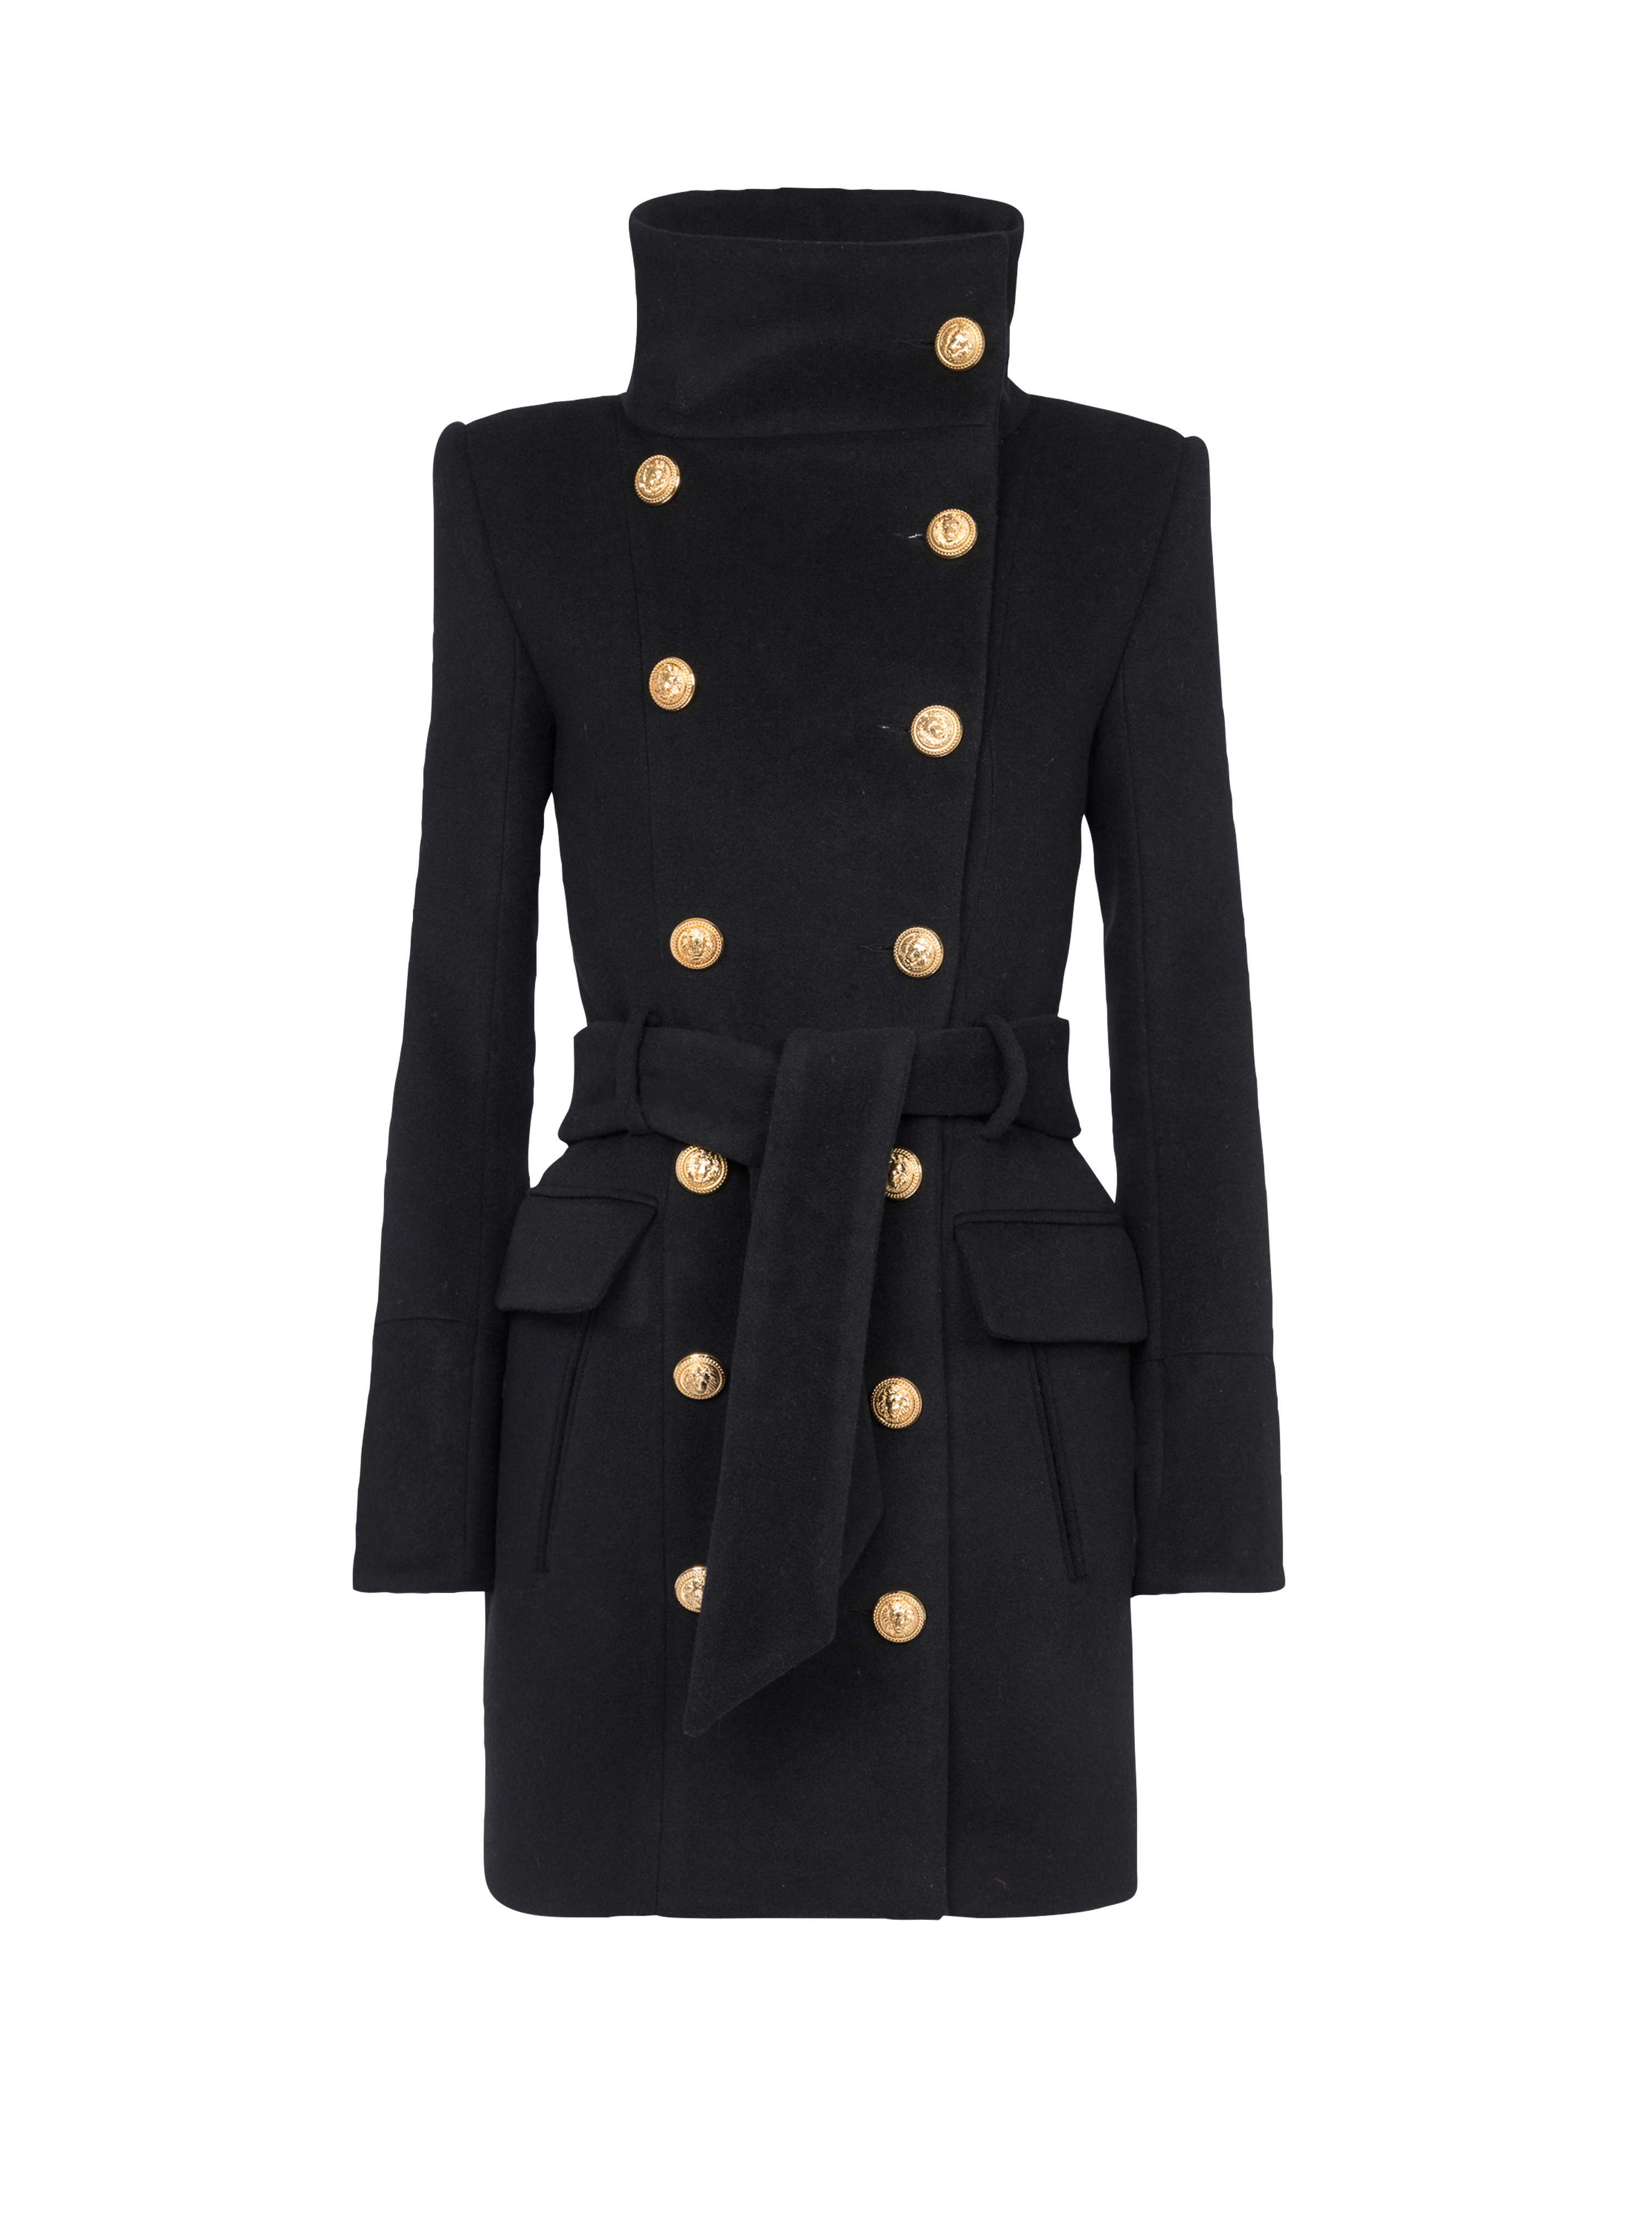 Manteau long en laine à double boutonnage doré, noir